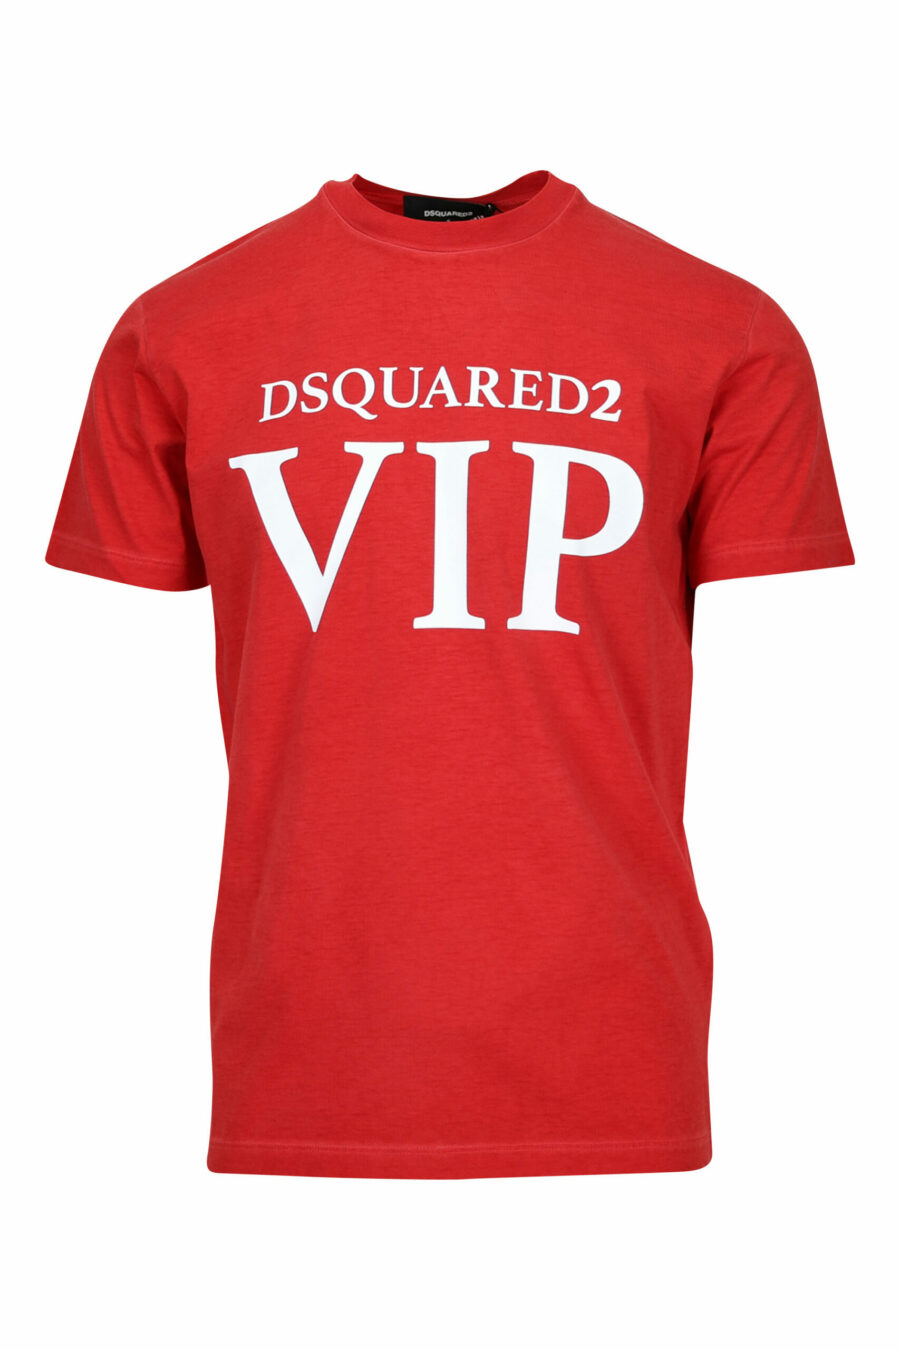 T-shirt rouge avec maxilogo "vip" - 8054148578923 scaled